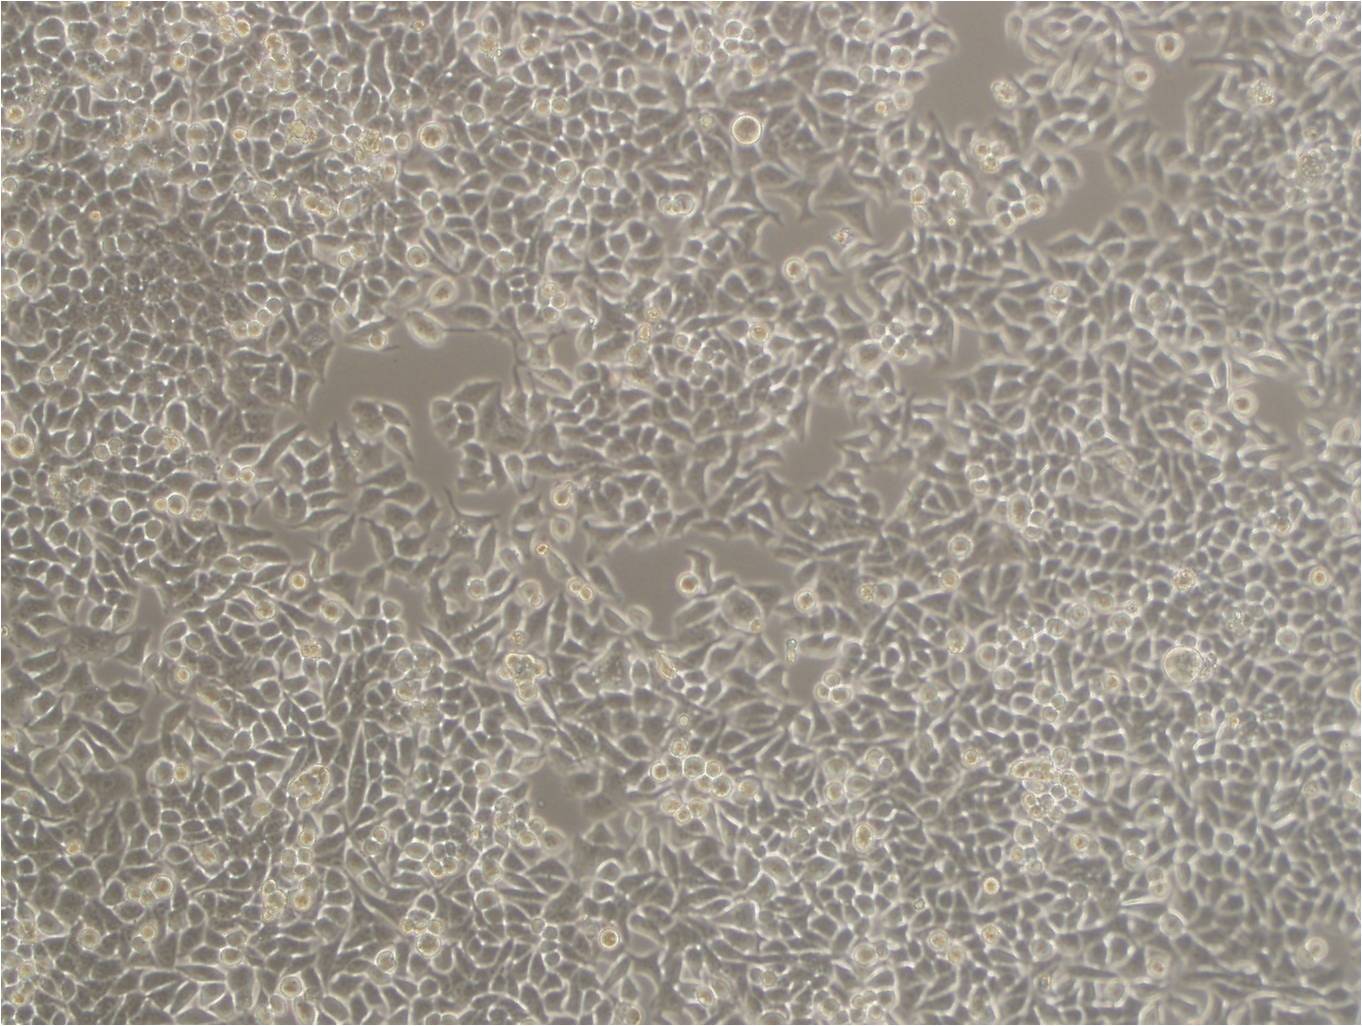 NPC-TW01 epithelioid cells人鼻咽癌细胞系